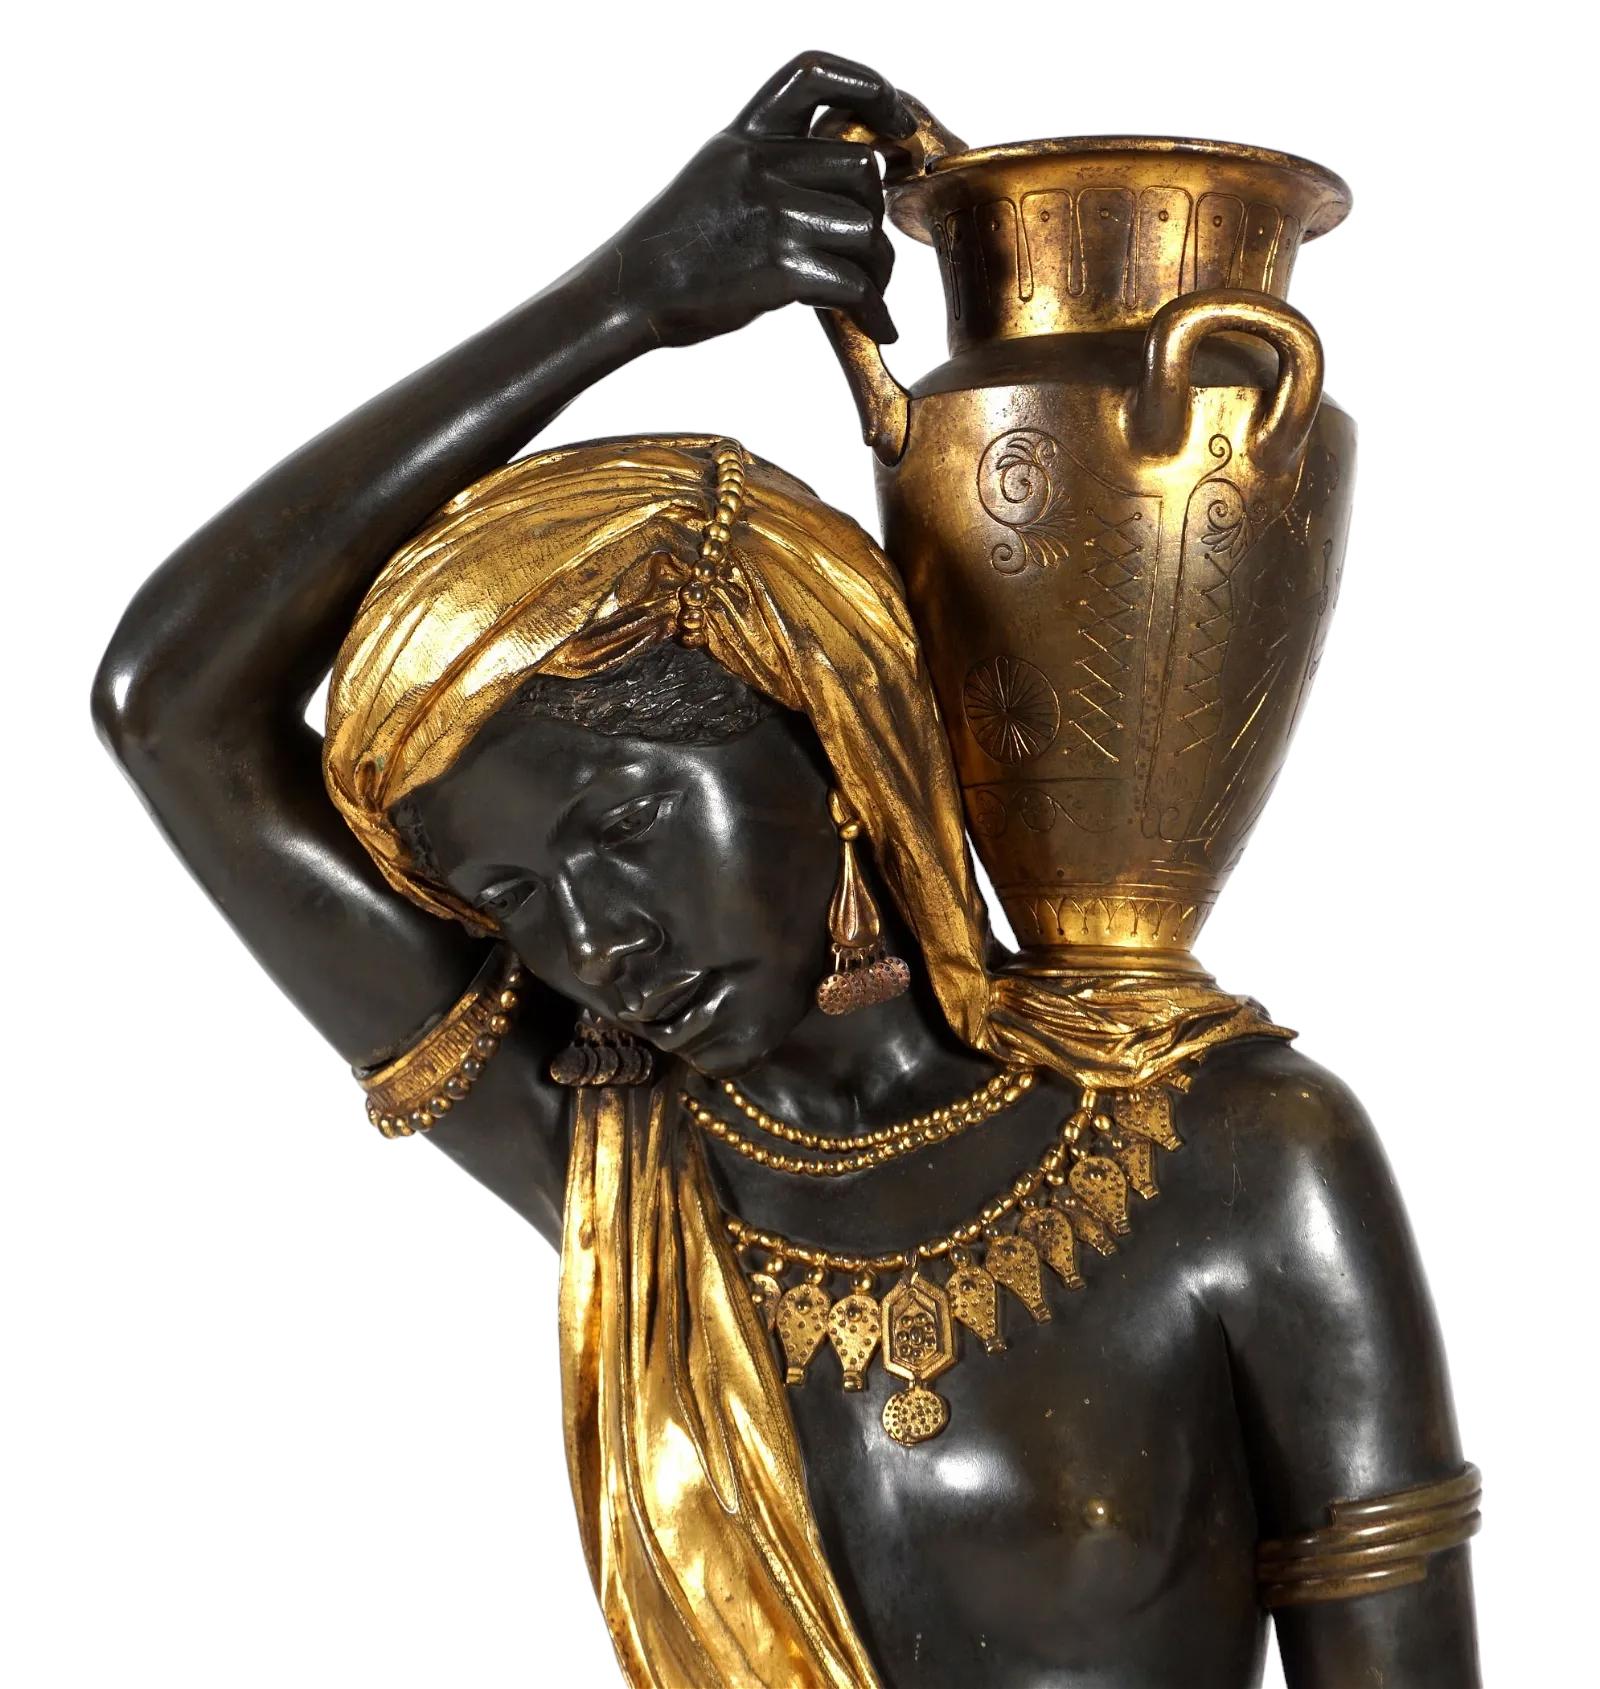 Vergoldete und patinierte Bronzestatue einer nubischen Wasserträgerin mit einem Krug auf der Schulter. Der Kontrast zwischen der tiefen Bronze und der hellen Vergoldung ist unglaublich eindrucksvoll. Die Frau trieft vor Goldschmuck und Drapierungen,